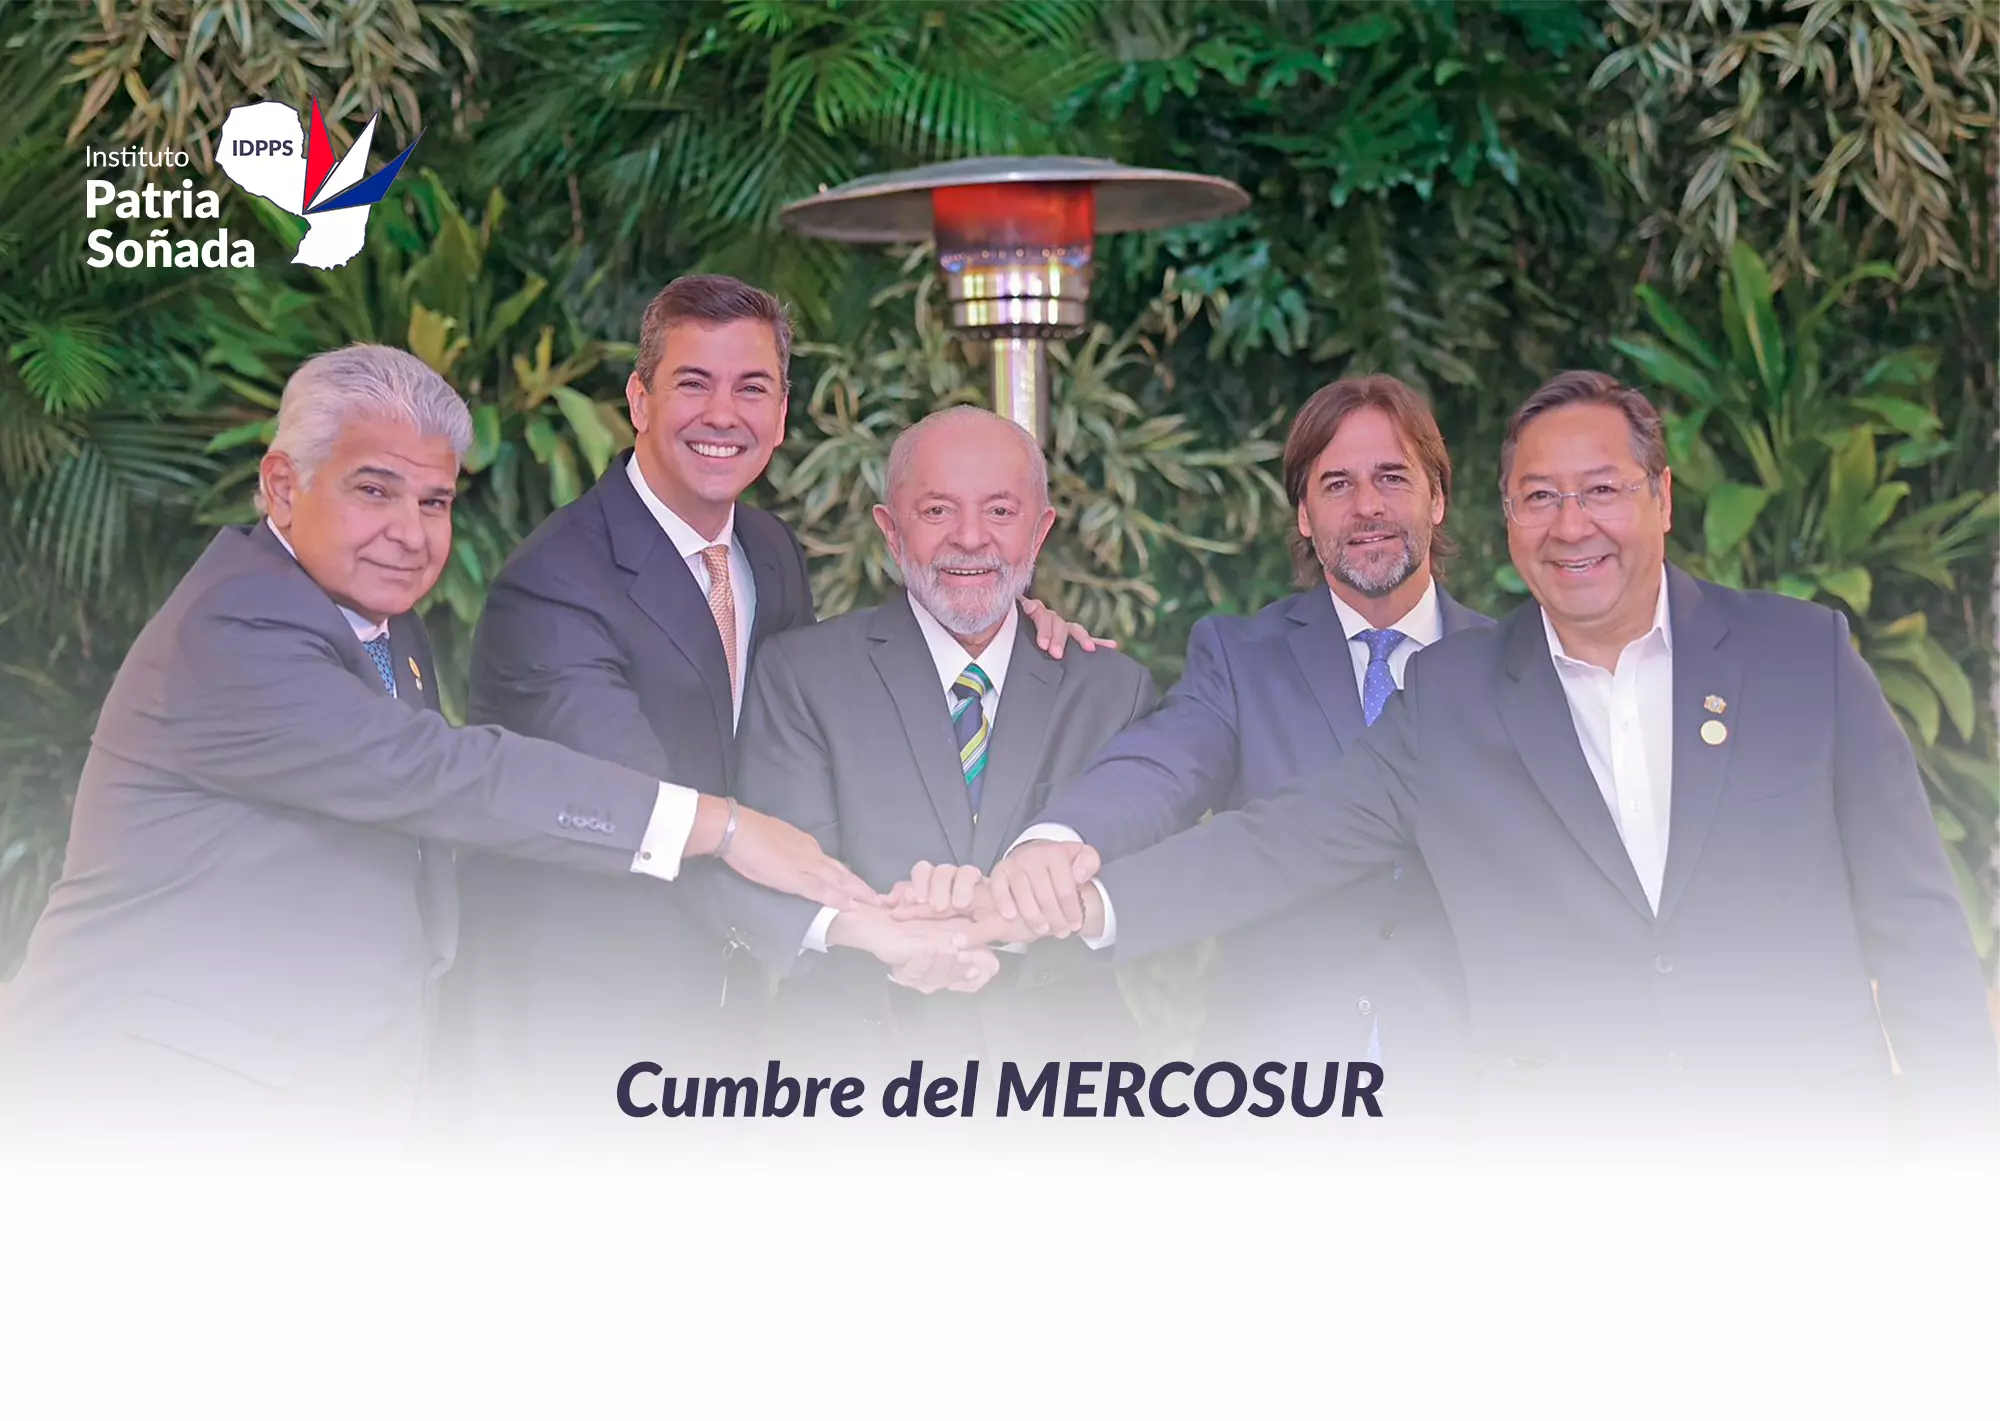 ¿Qué es una Cumbre del Mercosur?